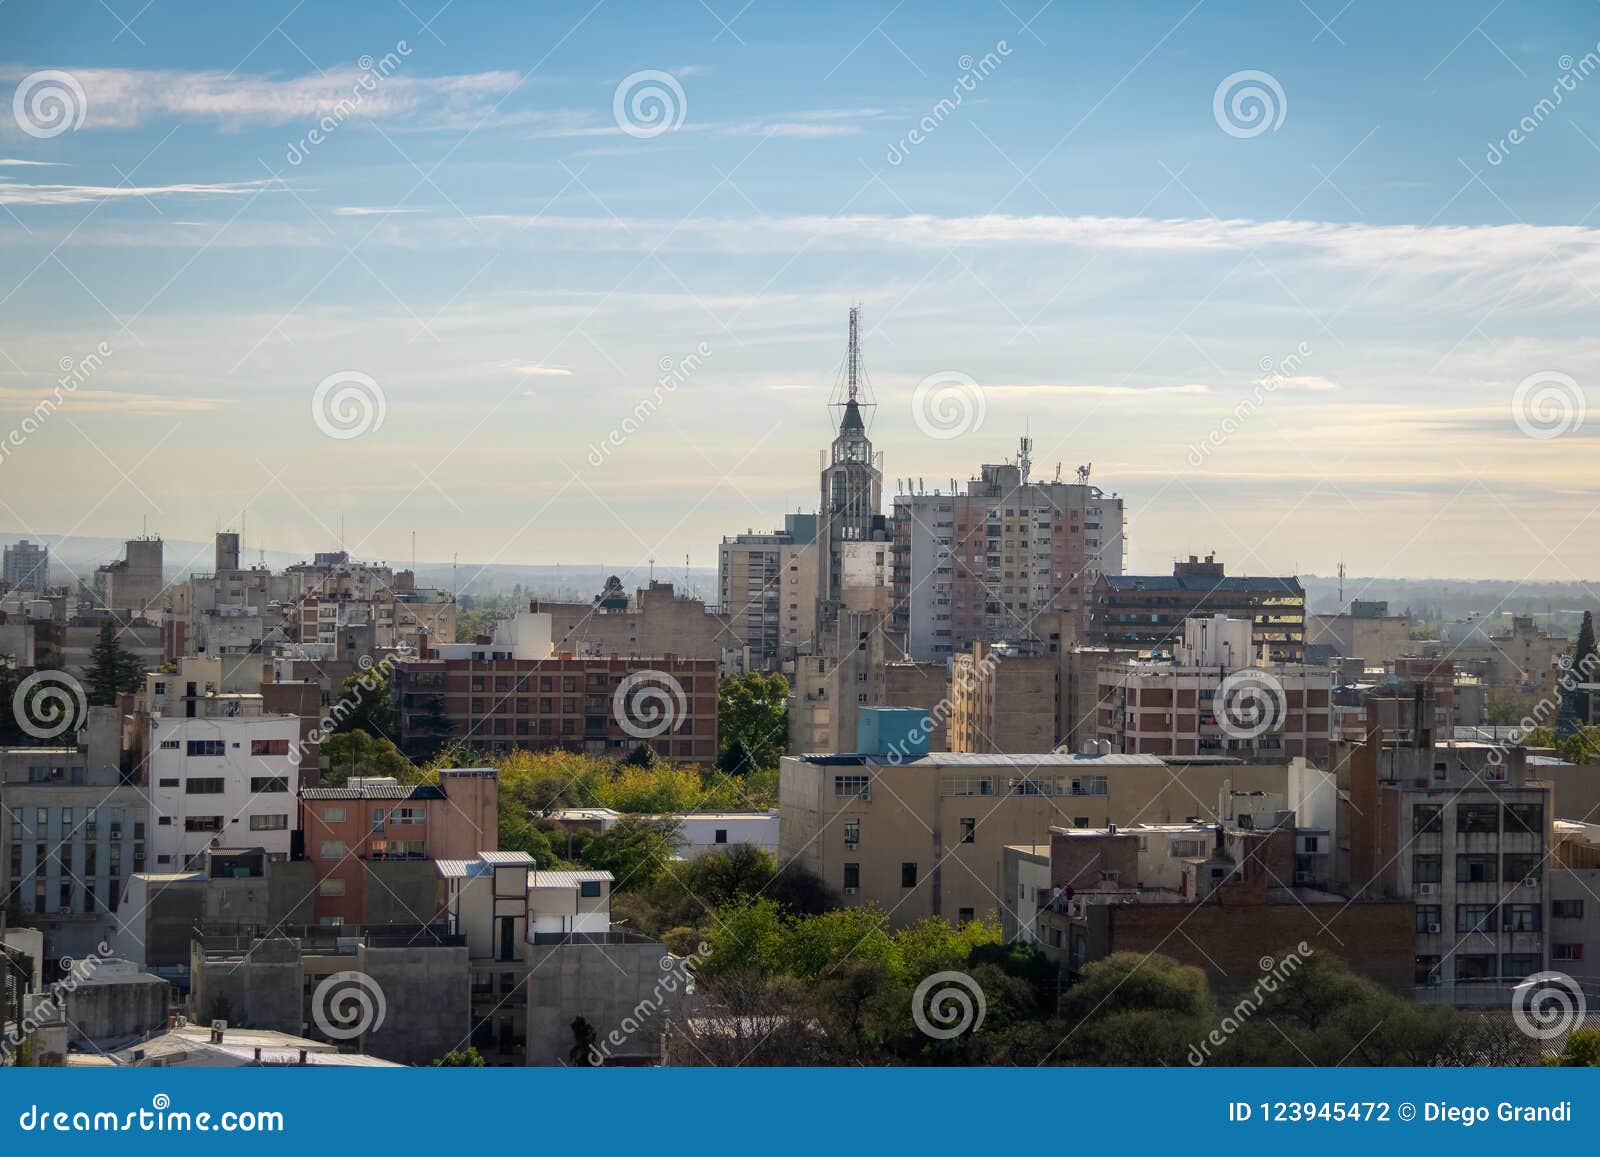 aerial view of mendoza city and edificio gomez building - mendoza, argentina